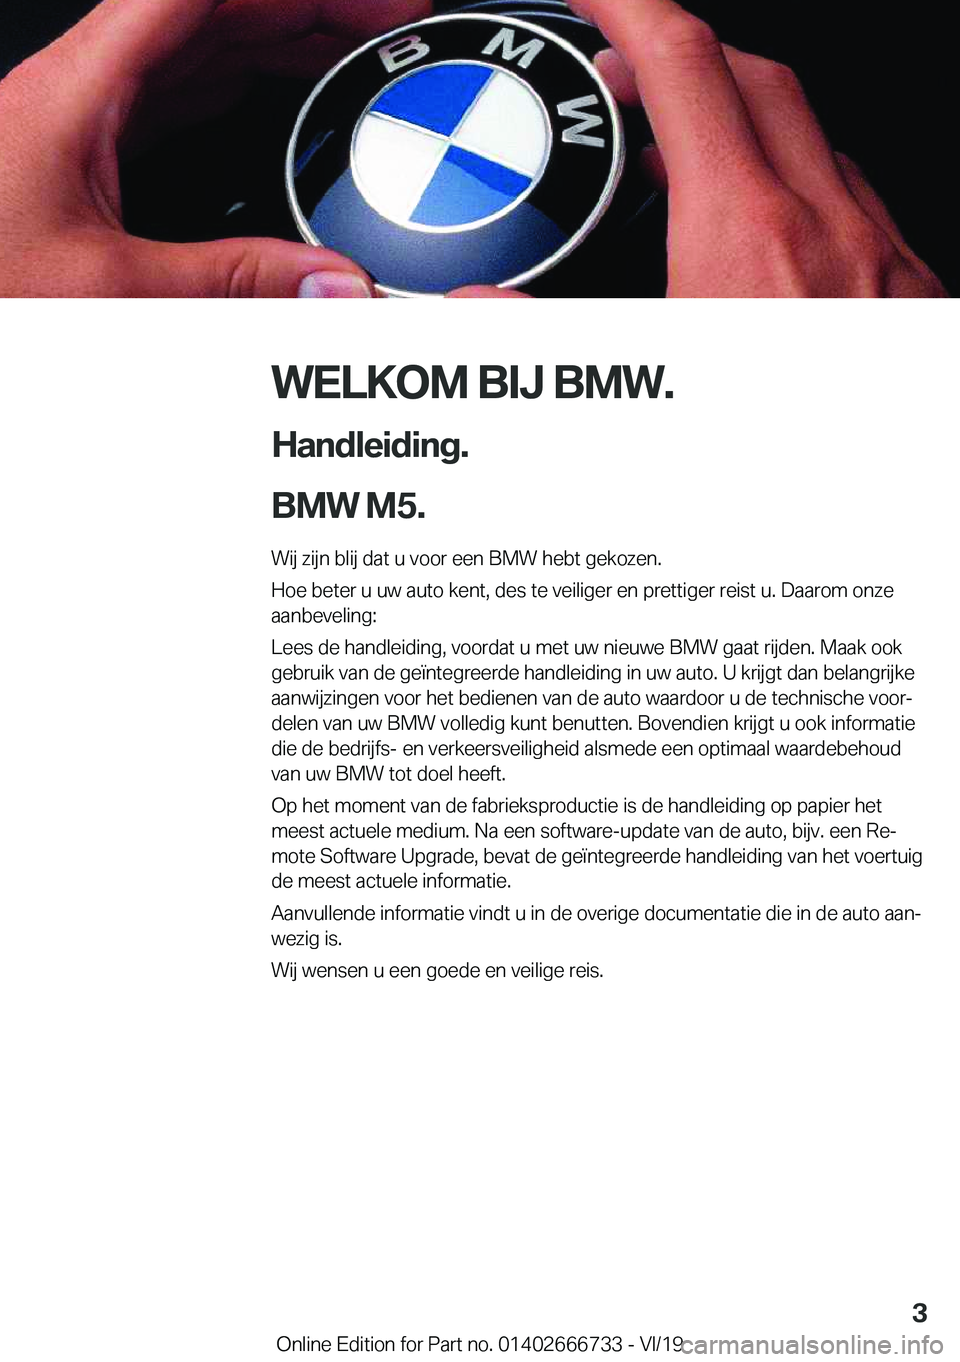 BMW M5 2020  Instructieboekjes (in Dutch) �W�E�L�K�O�M��B�I�J��B�M�W�.
�H�a�n�d�l�e�i�d�i�n�g�.
�B�M�W��M�5�. �W�i�j��z�i�j�n��b�l�i�j��d�a�t��u��v�o�o�r��e�e�n��B�M�W��h�e�b�t��g�e�k�o�z�e�n�.
�H�o�e��b�e�t�e�r��u��u�w��a�u�t